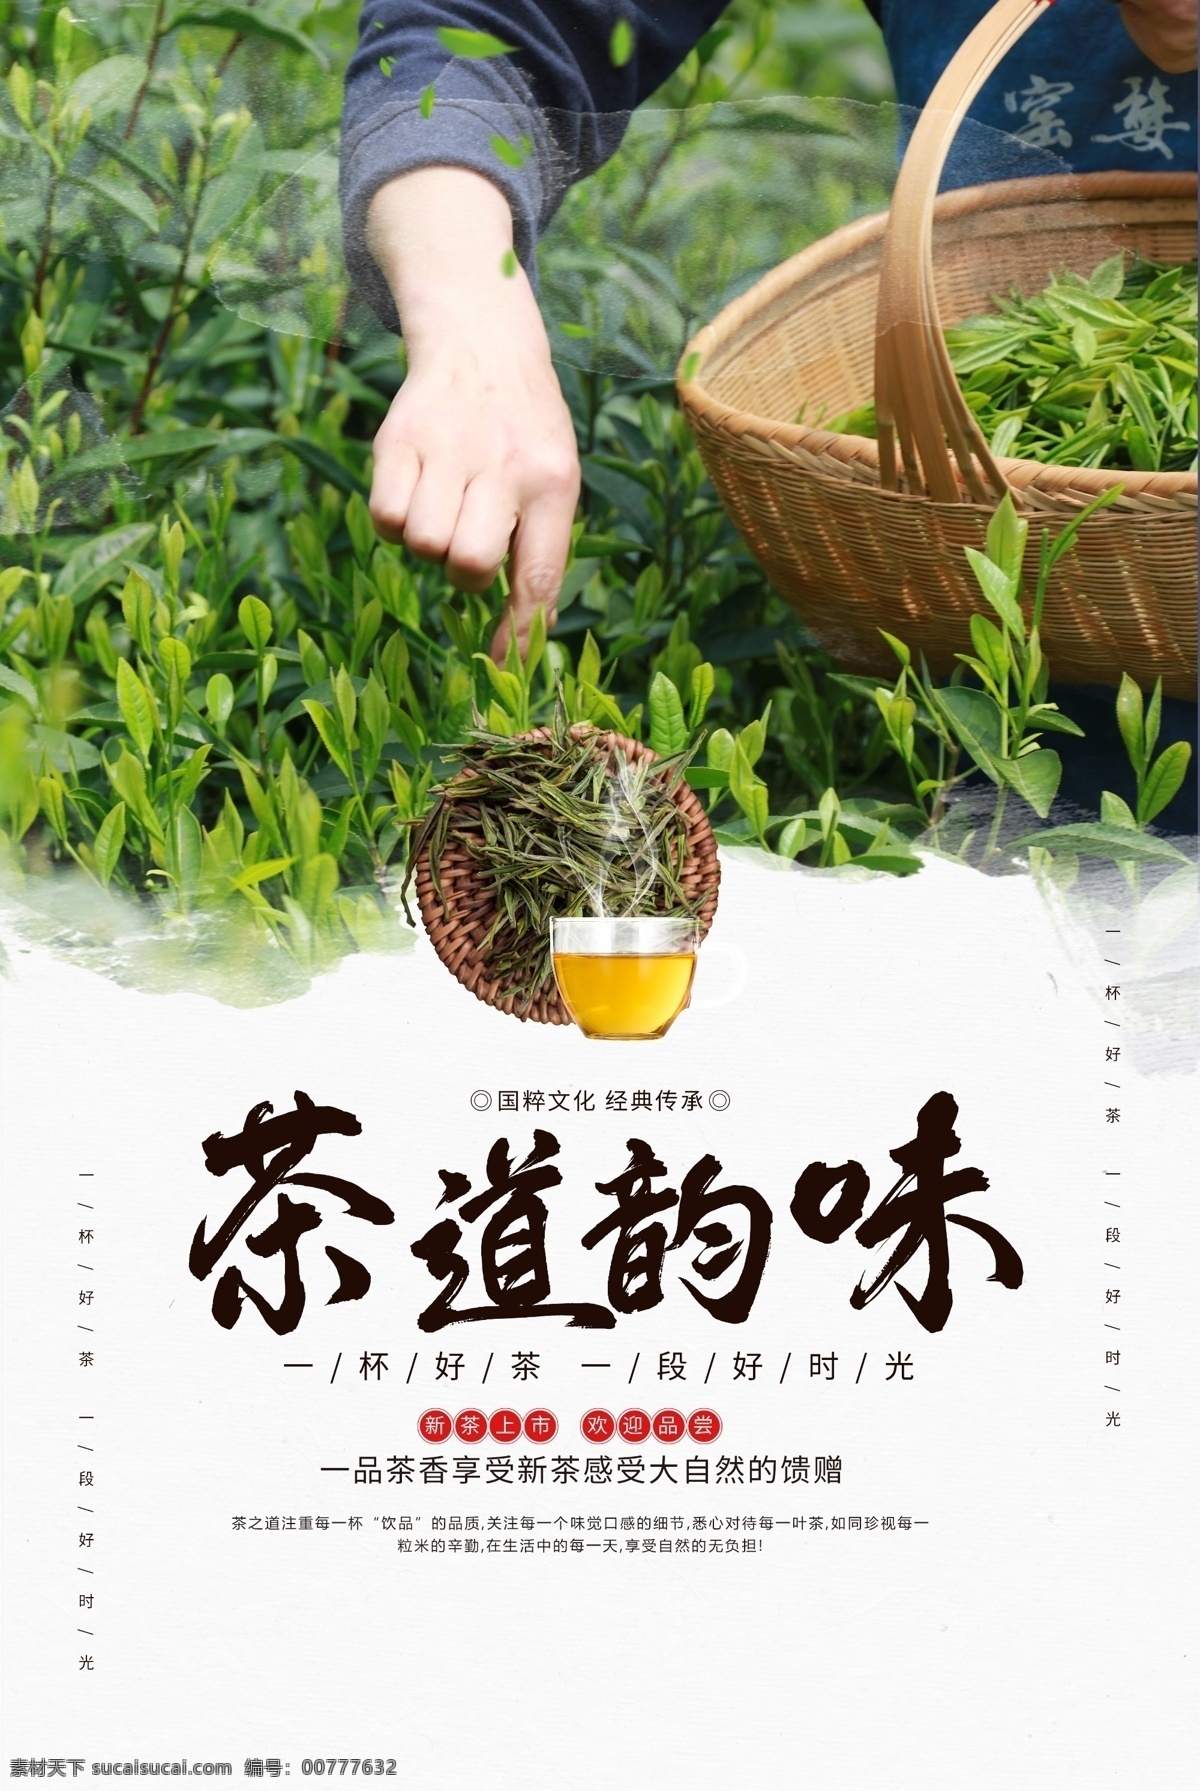 茶 韵 味 茶具 活动 背景 素材图片 茶韵 茶味 海报